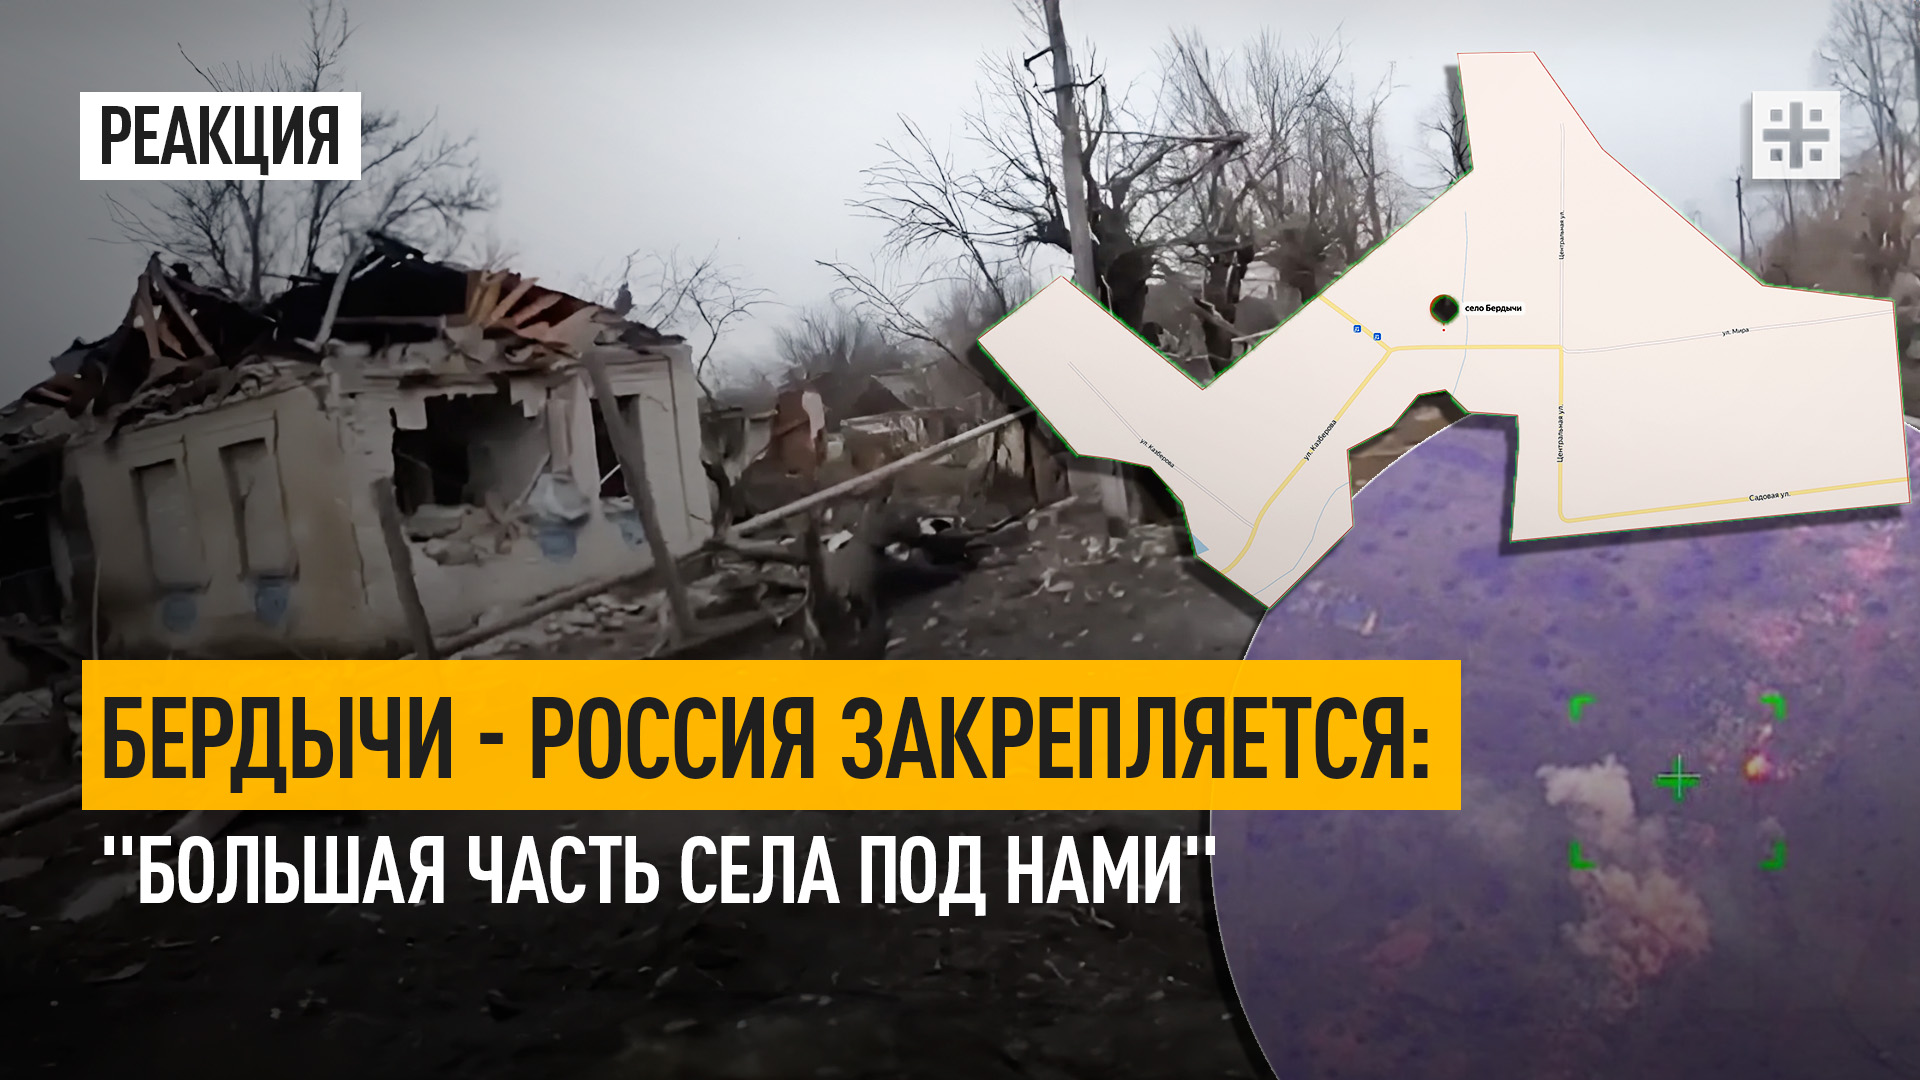 Бердычи — Россия закрепляется: "Большая часть села под нами"